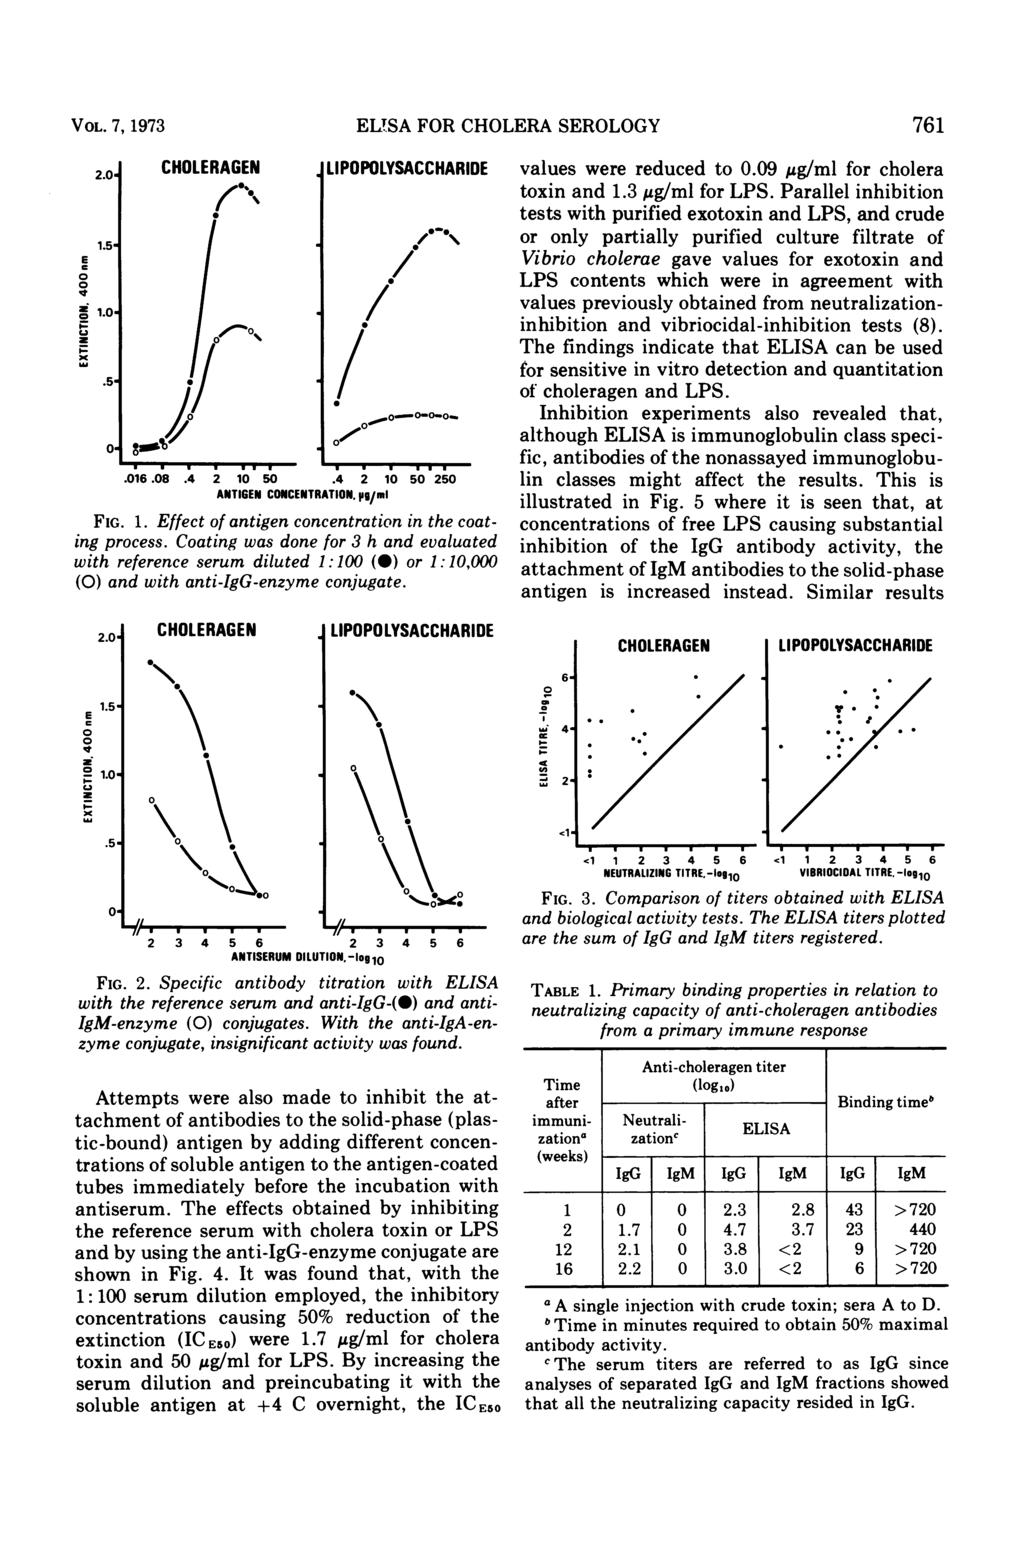 VOL. 7, 1973 2.. 1.5- i V Z 1.. x.5 - ELTSA FOR CHOLERA SEROLOGY / I...o.-OOO ~.16.8.4 2 1 5.4 2 1 5 25 ANTIGEN CONCENTRATION, p9/mi FIG. 1. Effect of antigen concentration in the coating process.